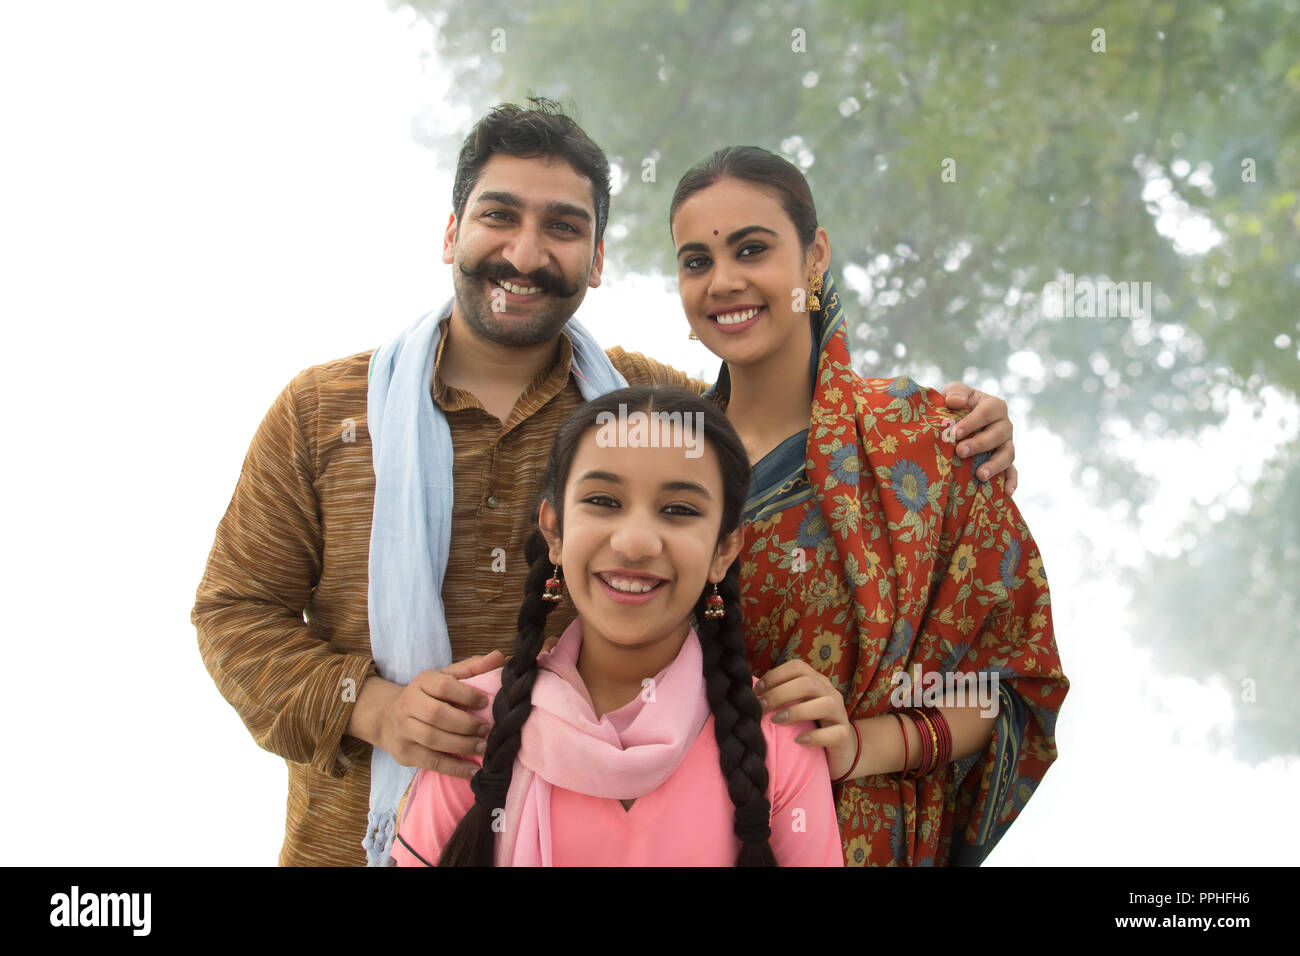 Portrait of a smiling man standing village avec sa femme et sa fille posant pour une photo de famille. Banque D'Images